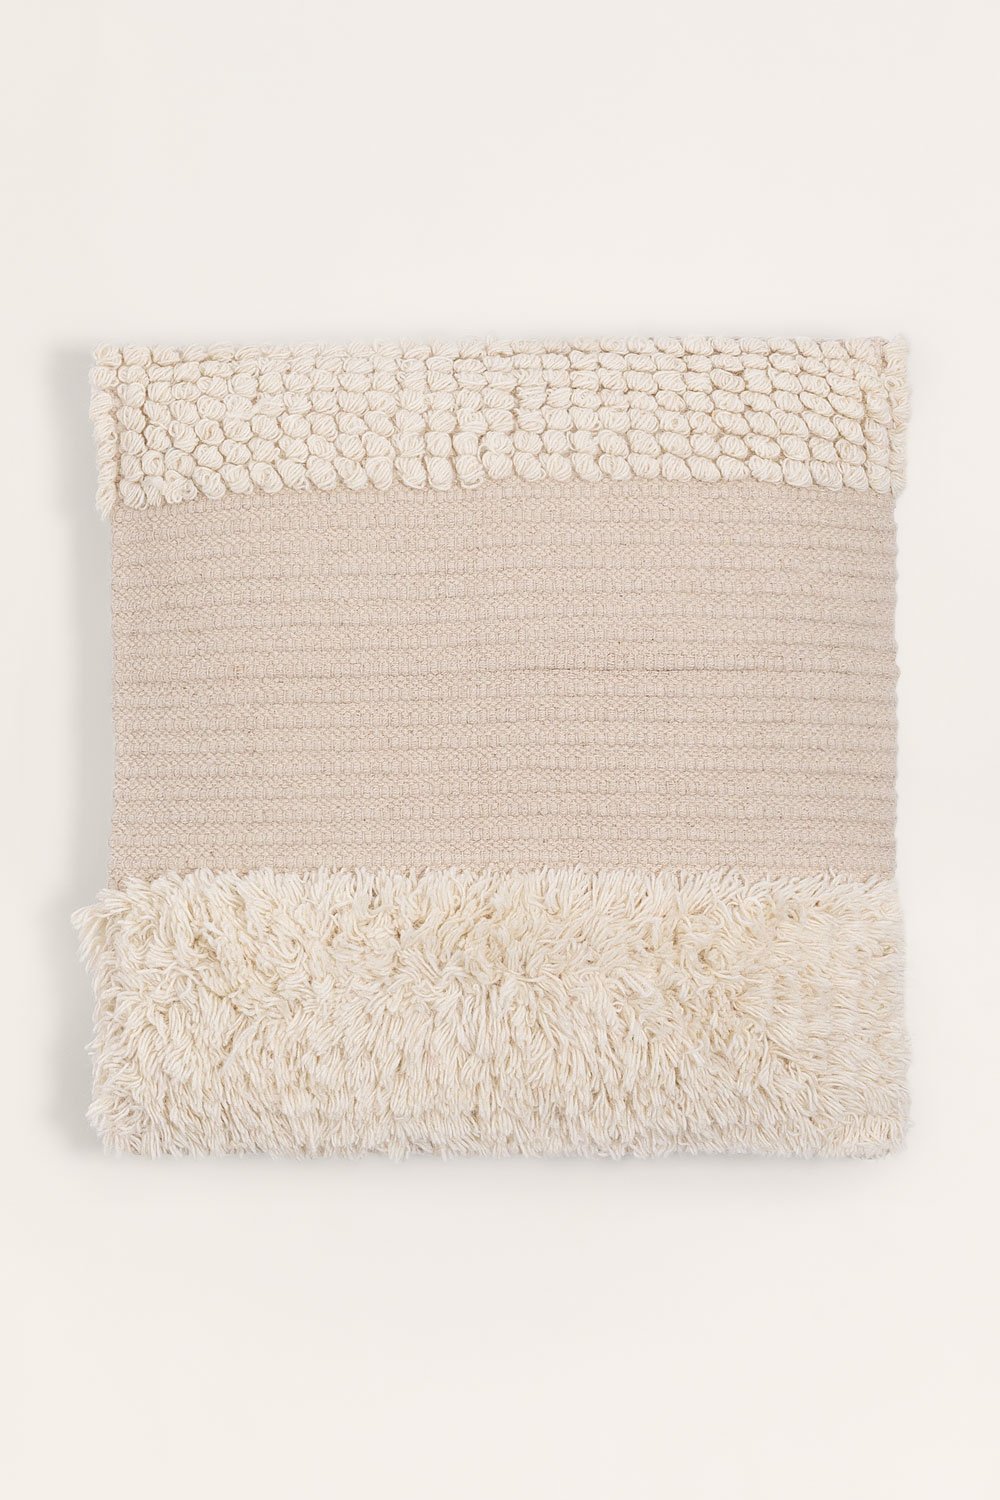 Cuscino quadrato in cotone (50x50 cm) Pivit, immagine della galleria 1